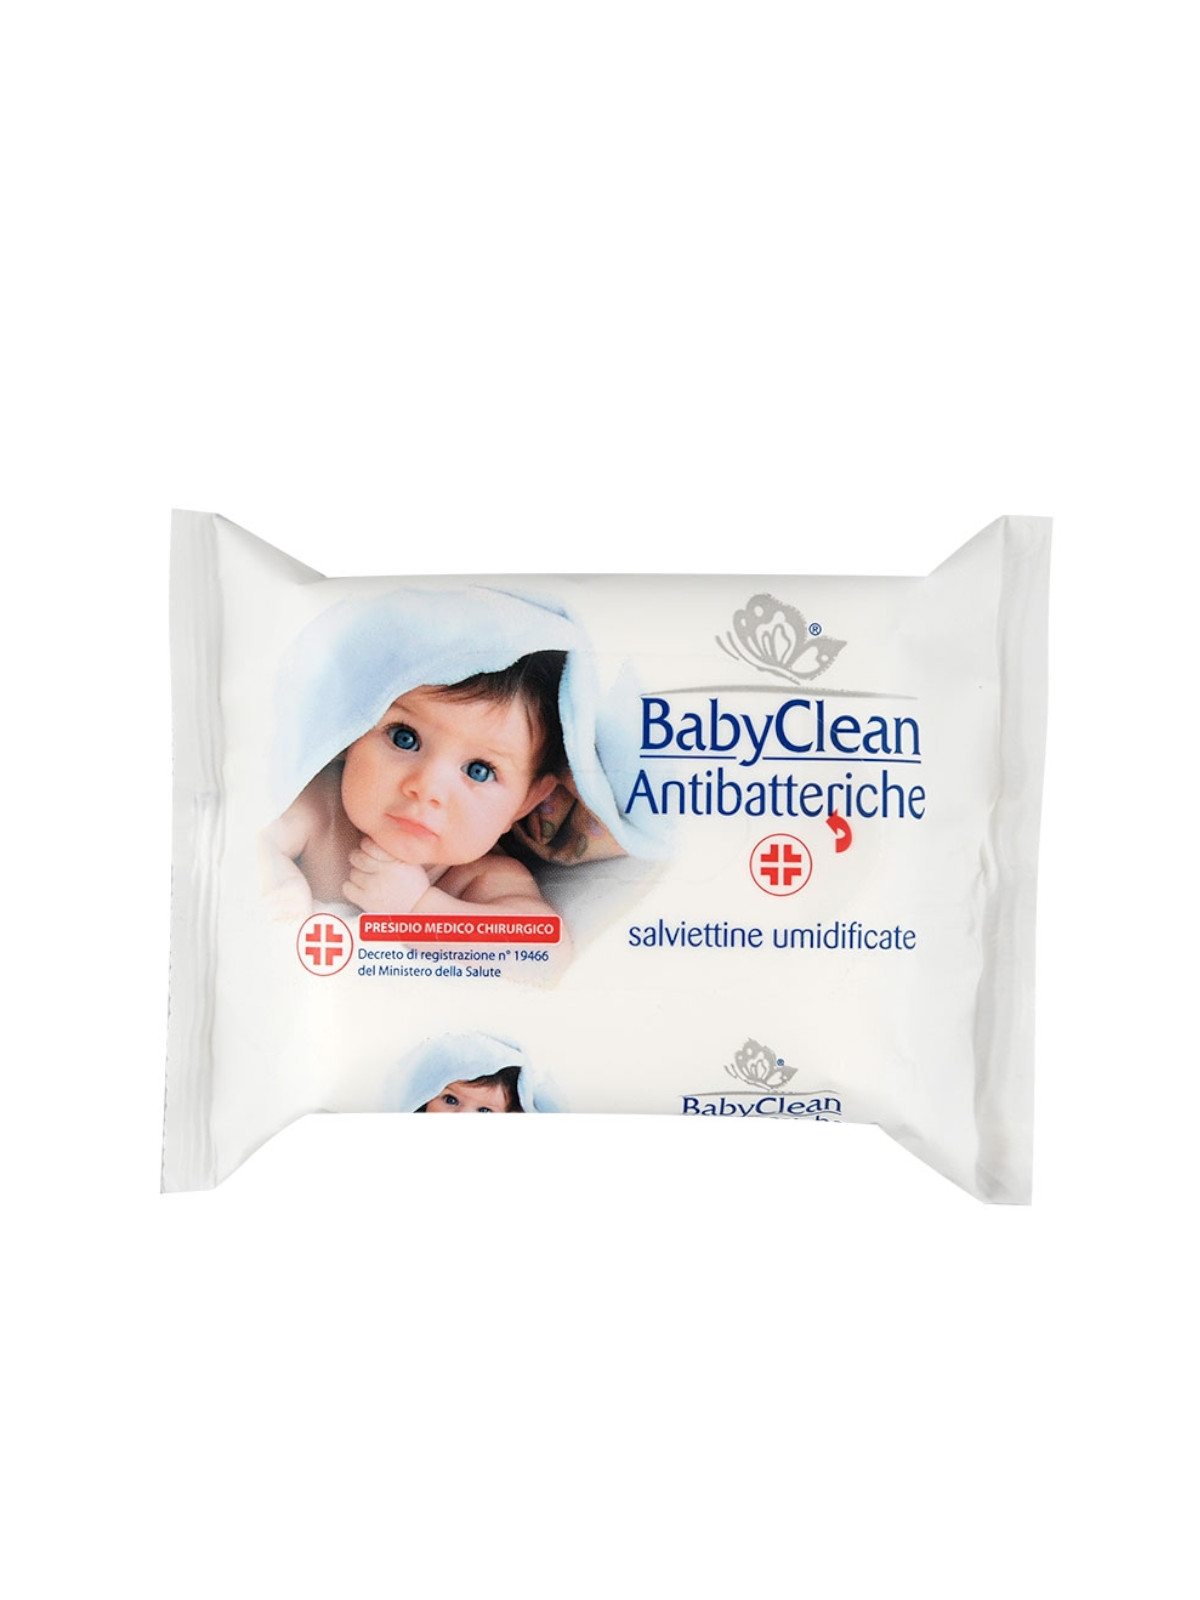 Palucart® baby clean salviette antibatteriche pulizia e disinfezione rapida baby 20 salviette umidificate per neonati - Baby Clean